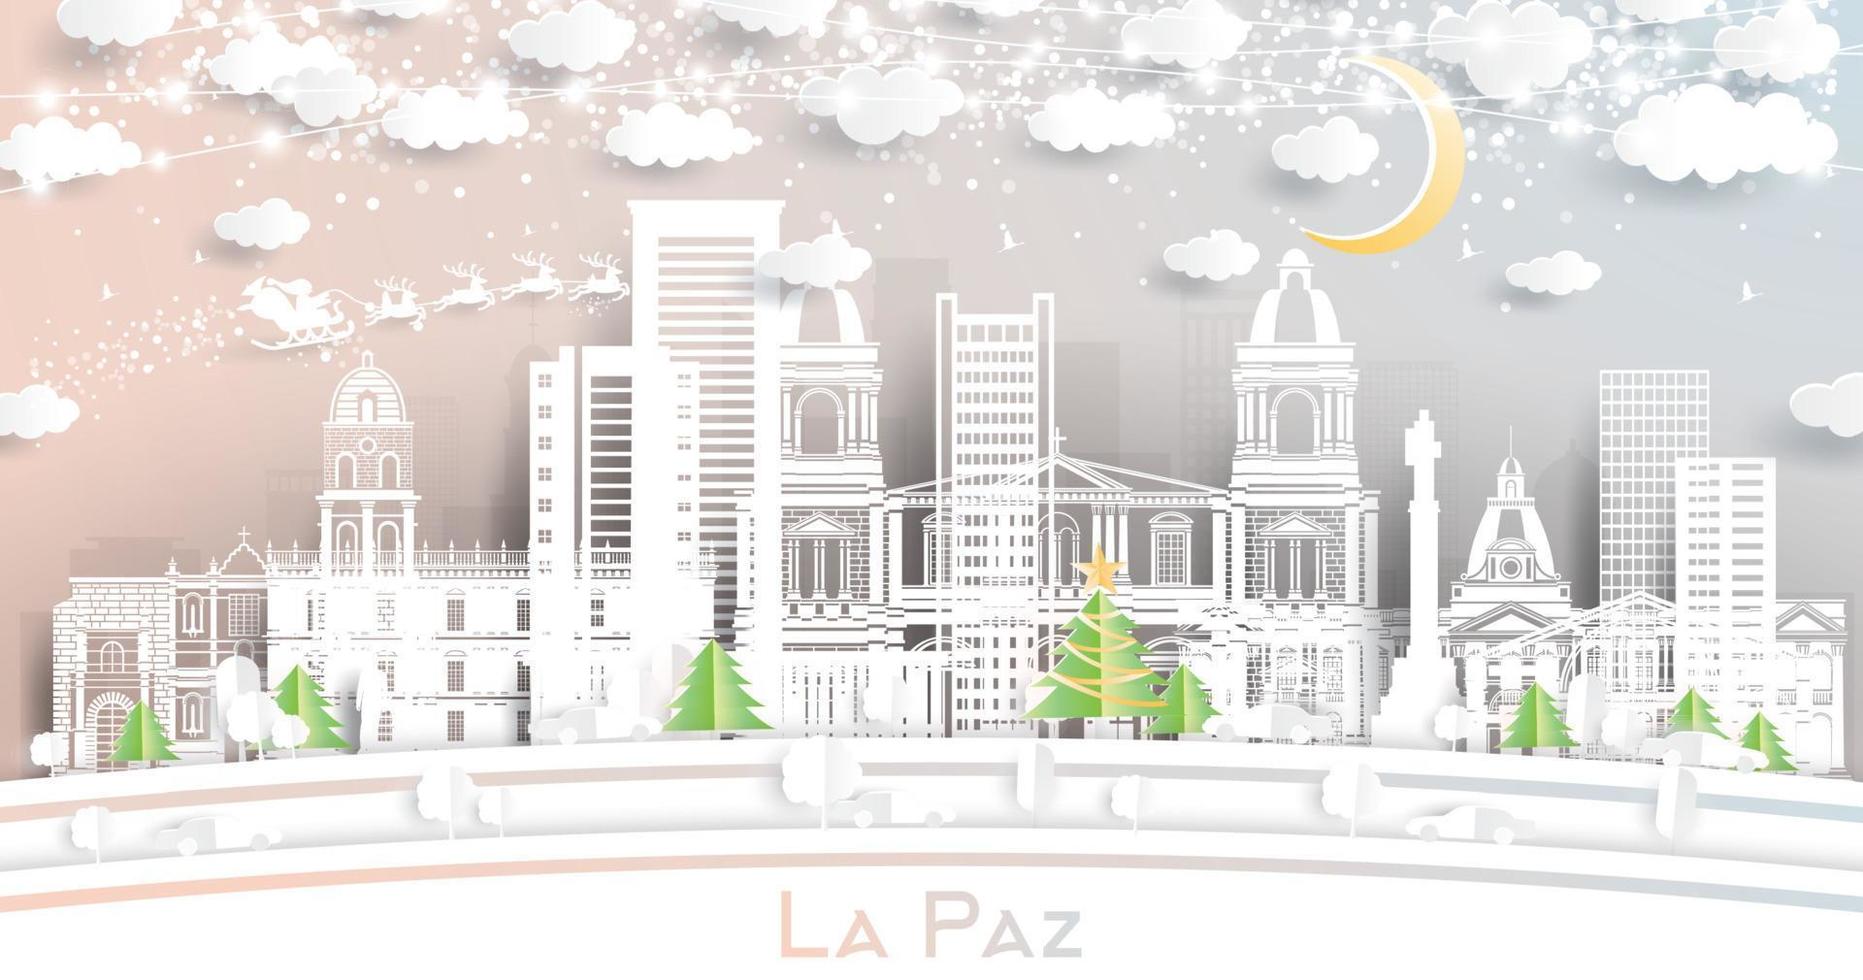 la paz Bolivia stad horizon in papier besnoeiing stijl met sneeuwvlokken, maan en neon guirlande. vector